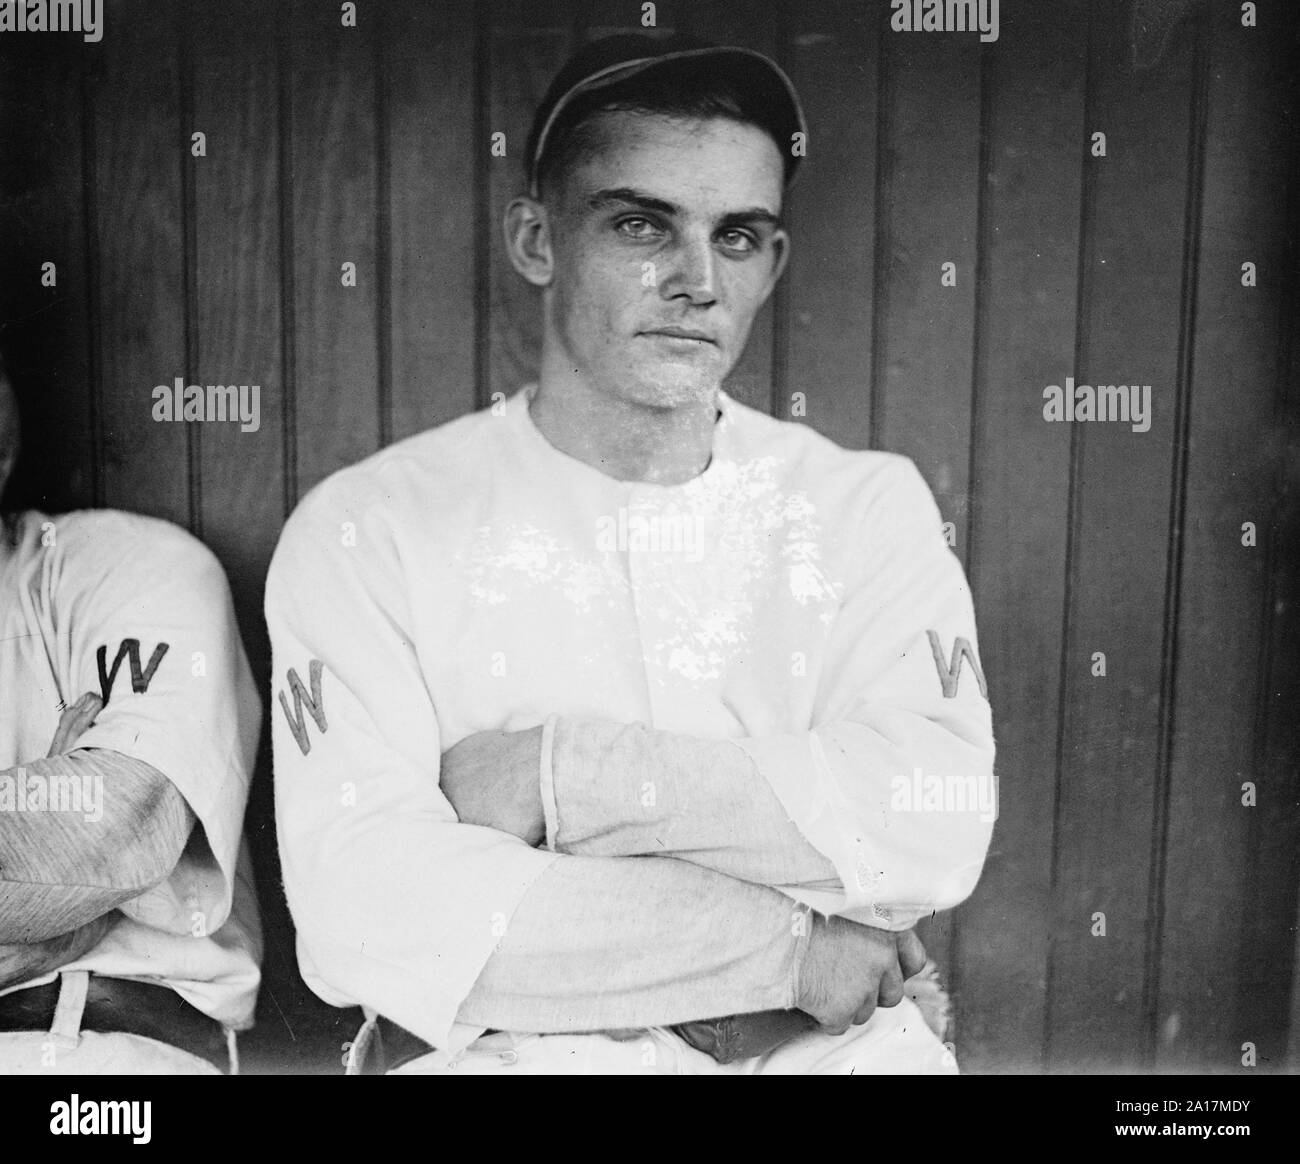 Chick Gandil, Charles Arnold 'Chick' Gandil (1888 - 1970), joueur de baseball professionnel, mieux connu comme le chef des acteurs impliqués dans le scandale de Sox noir 1919. Banque D'Images